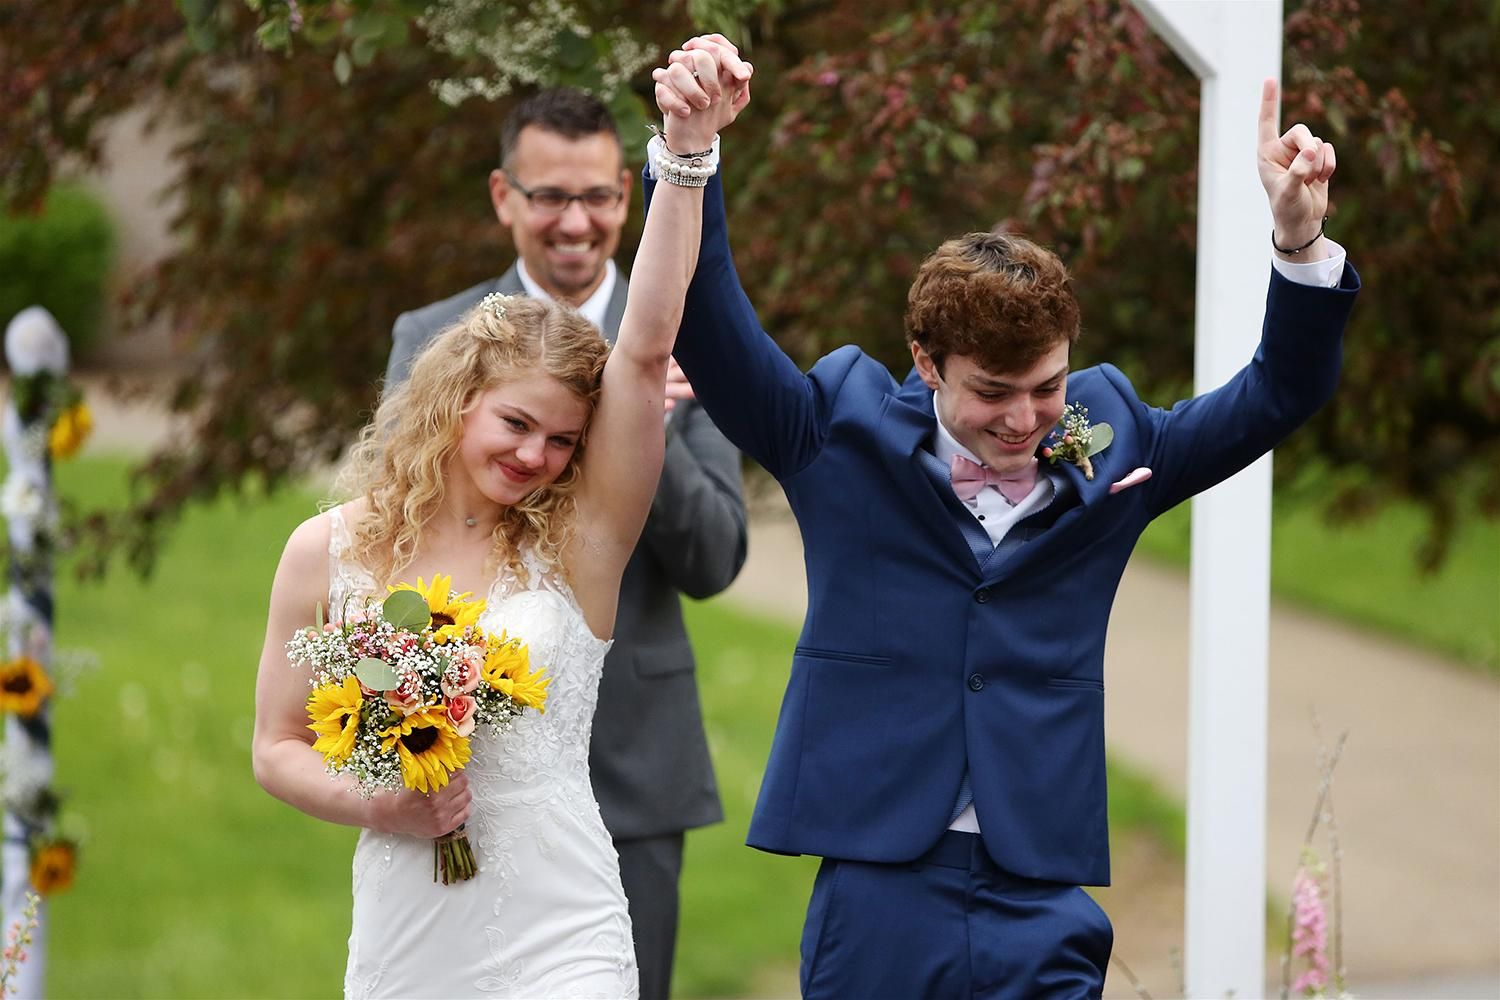 18-летние подростки поженились из-за болезни парня